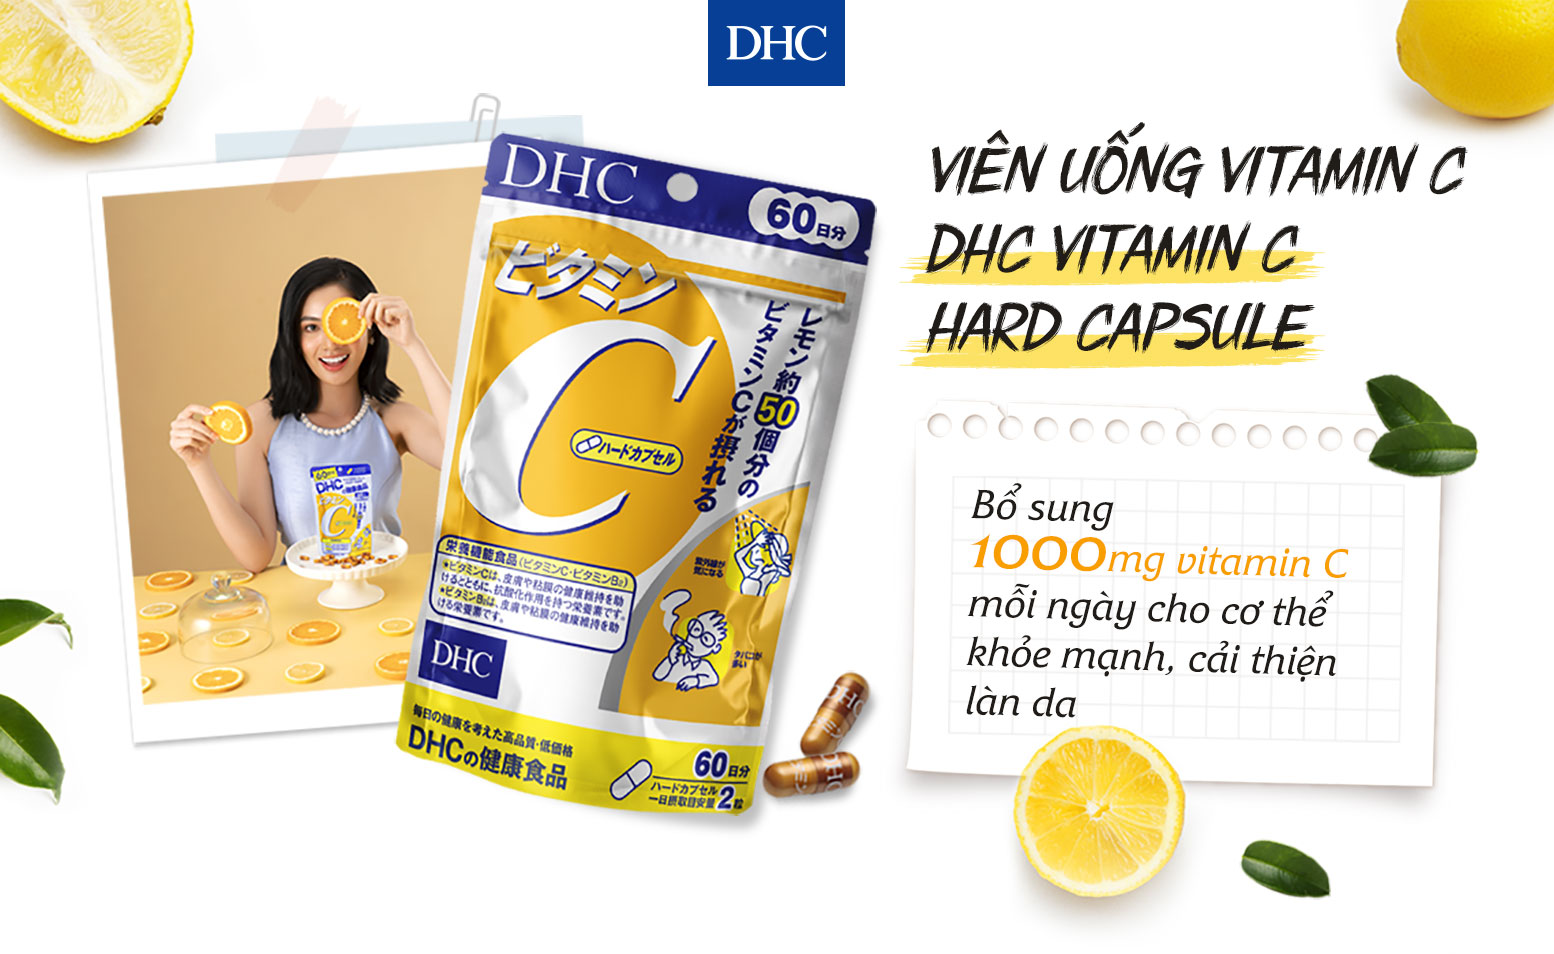 Viên uống vitamin C DHC bổ sung 1000mg vitamin C cho cơ thể